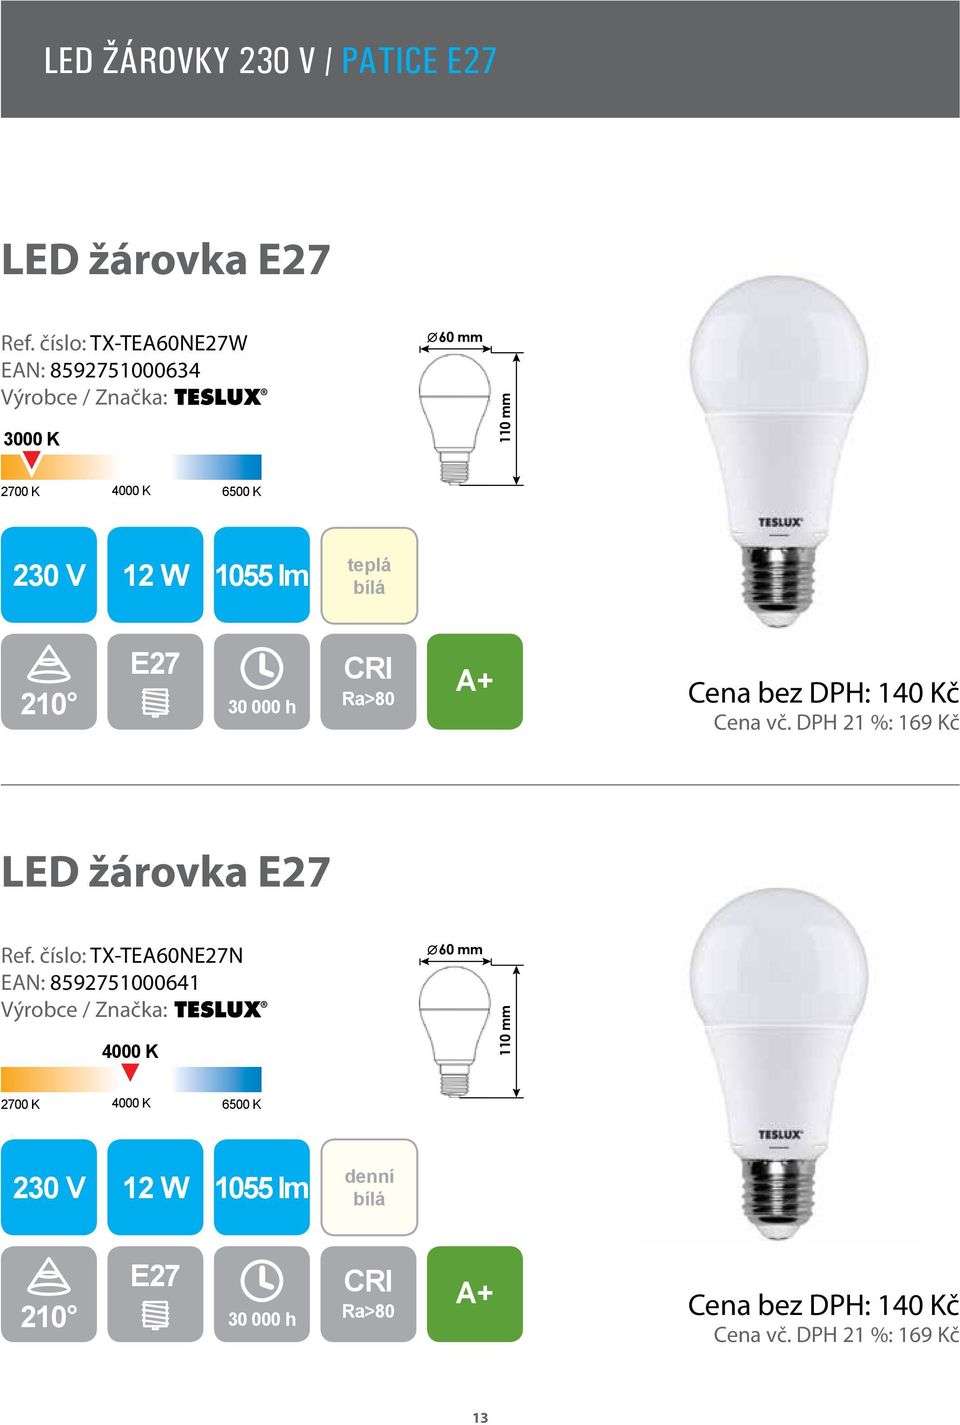 2016 / II. čtvrtletí KATALOG LED OSVĚTLENÍ. žárovky / pásky / kancelářské  osvětlení / průmyslové osvětlení / veřejné osvětlení - PDF Stažení zdarma